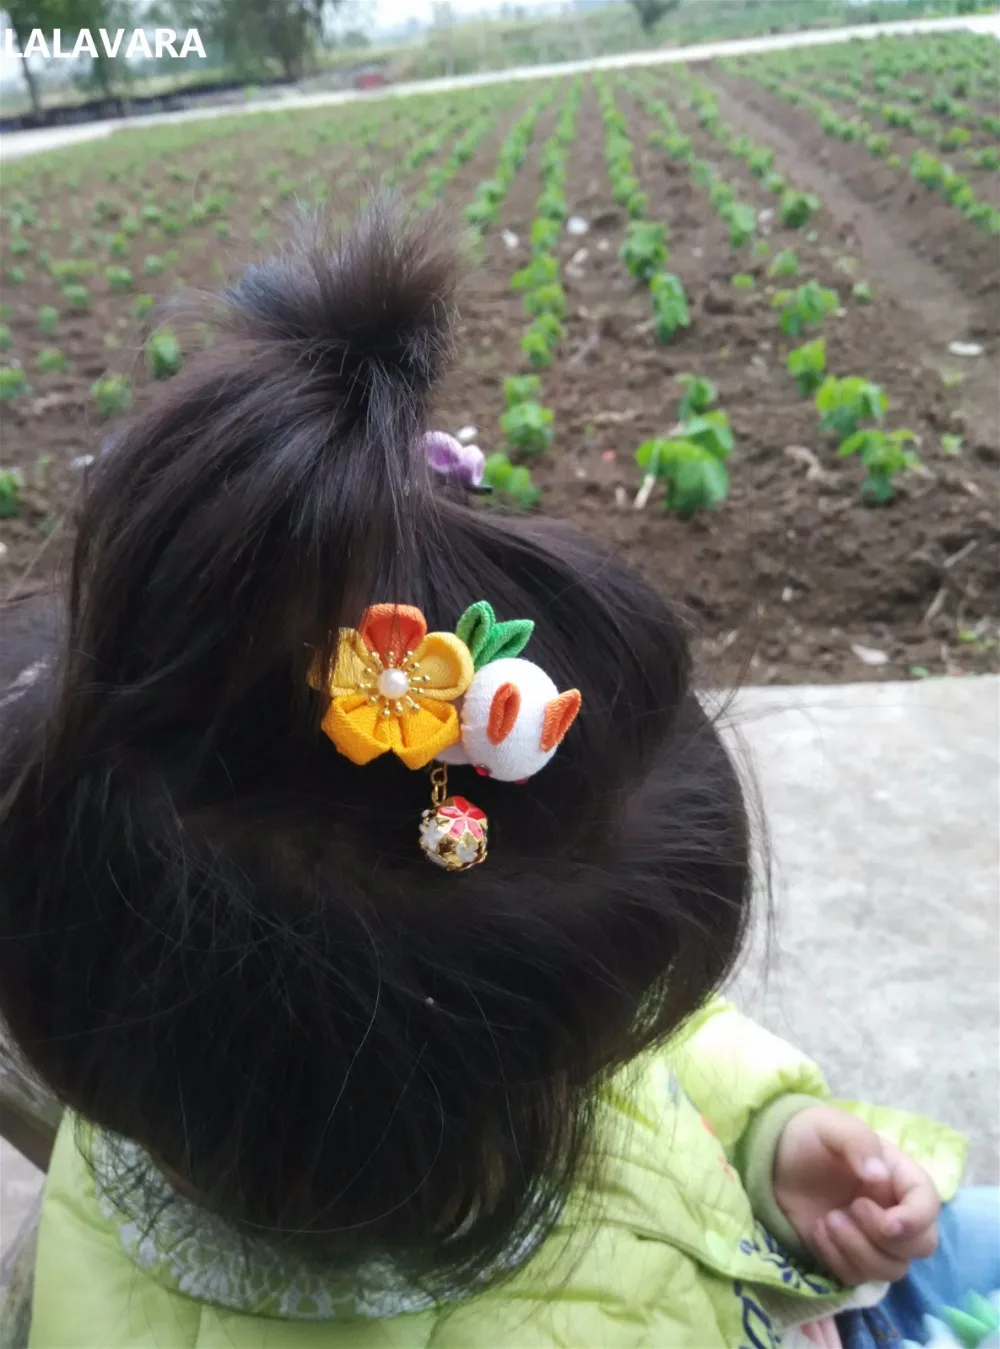 LALAVARA микс матч 50 шт половина-готовая Ткань Цветы для DIY kanzashi заколки для волос